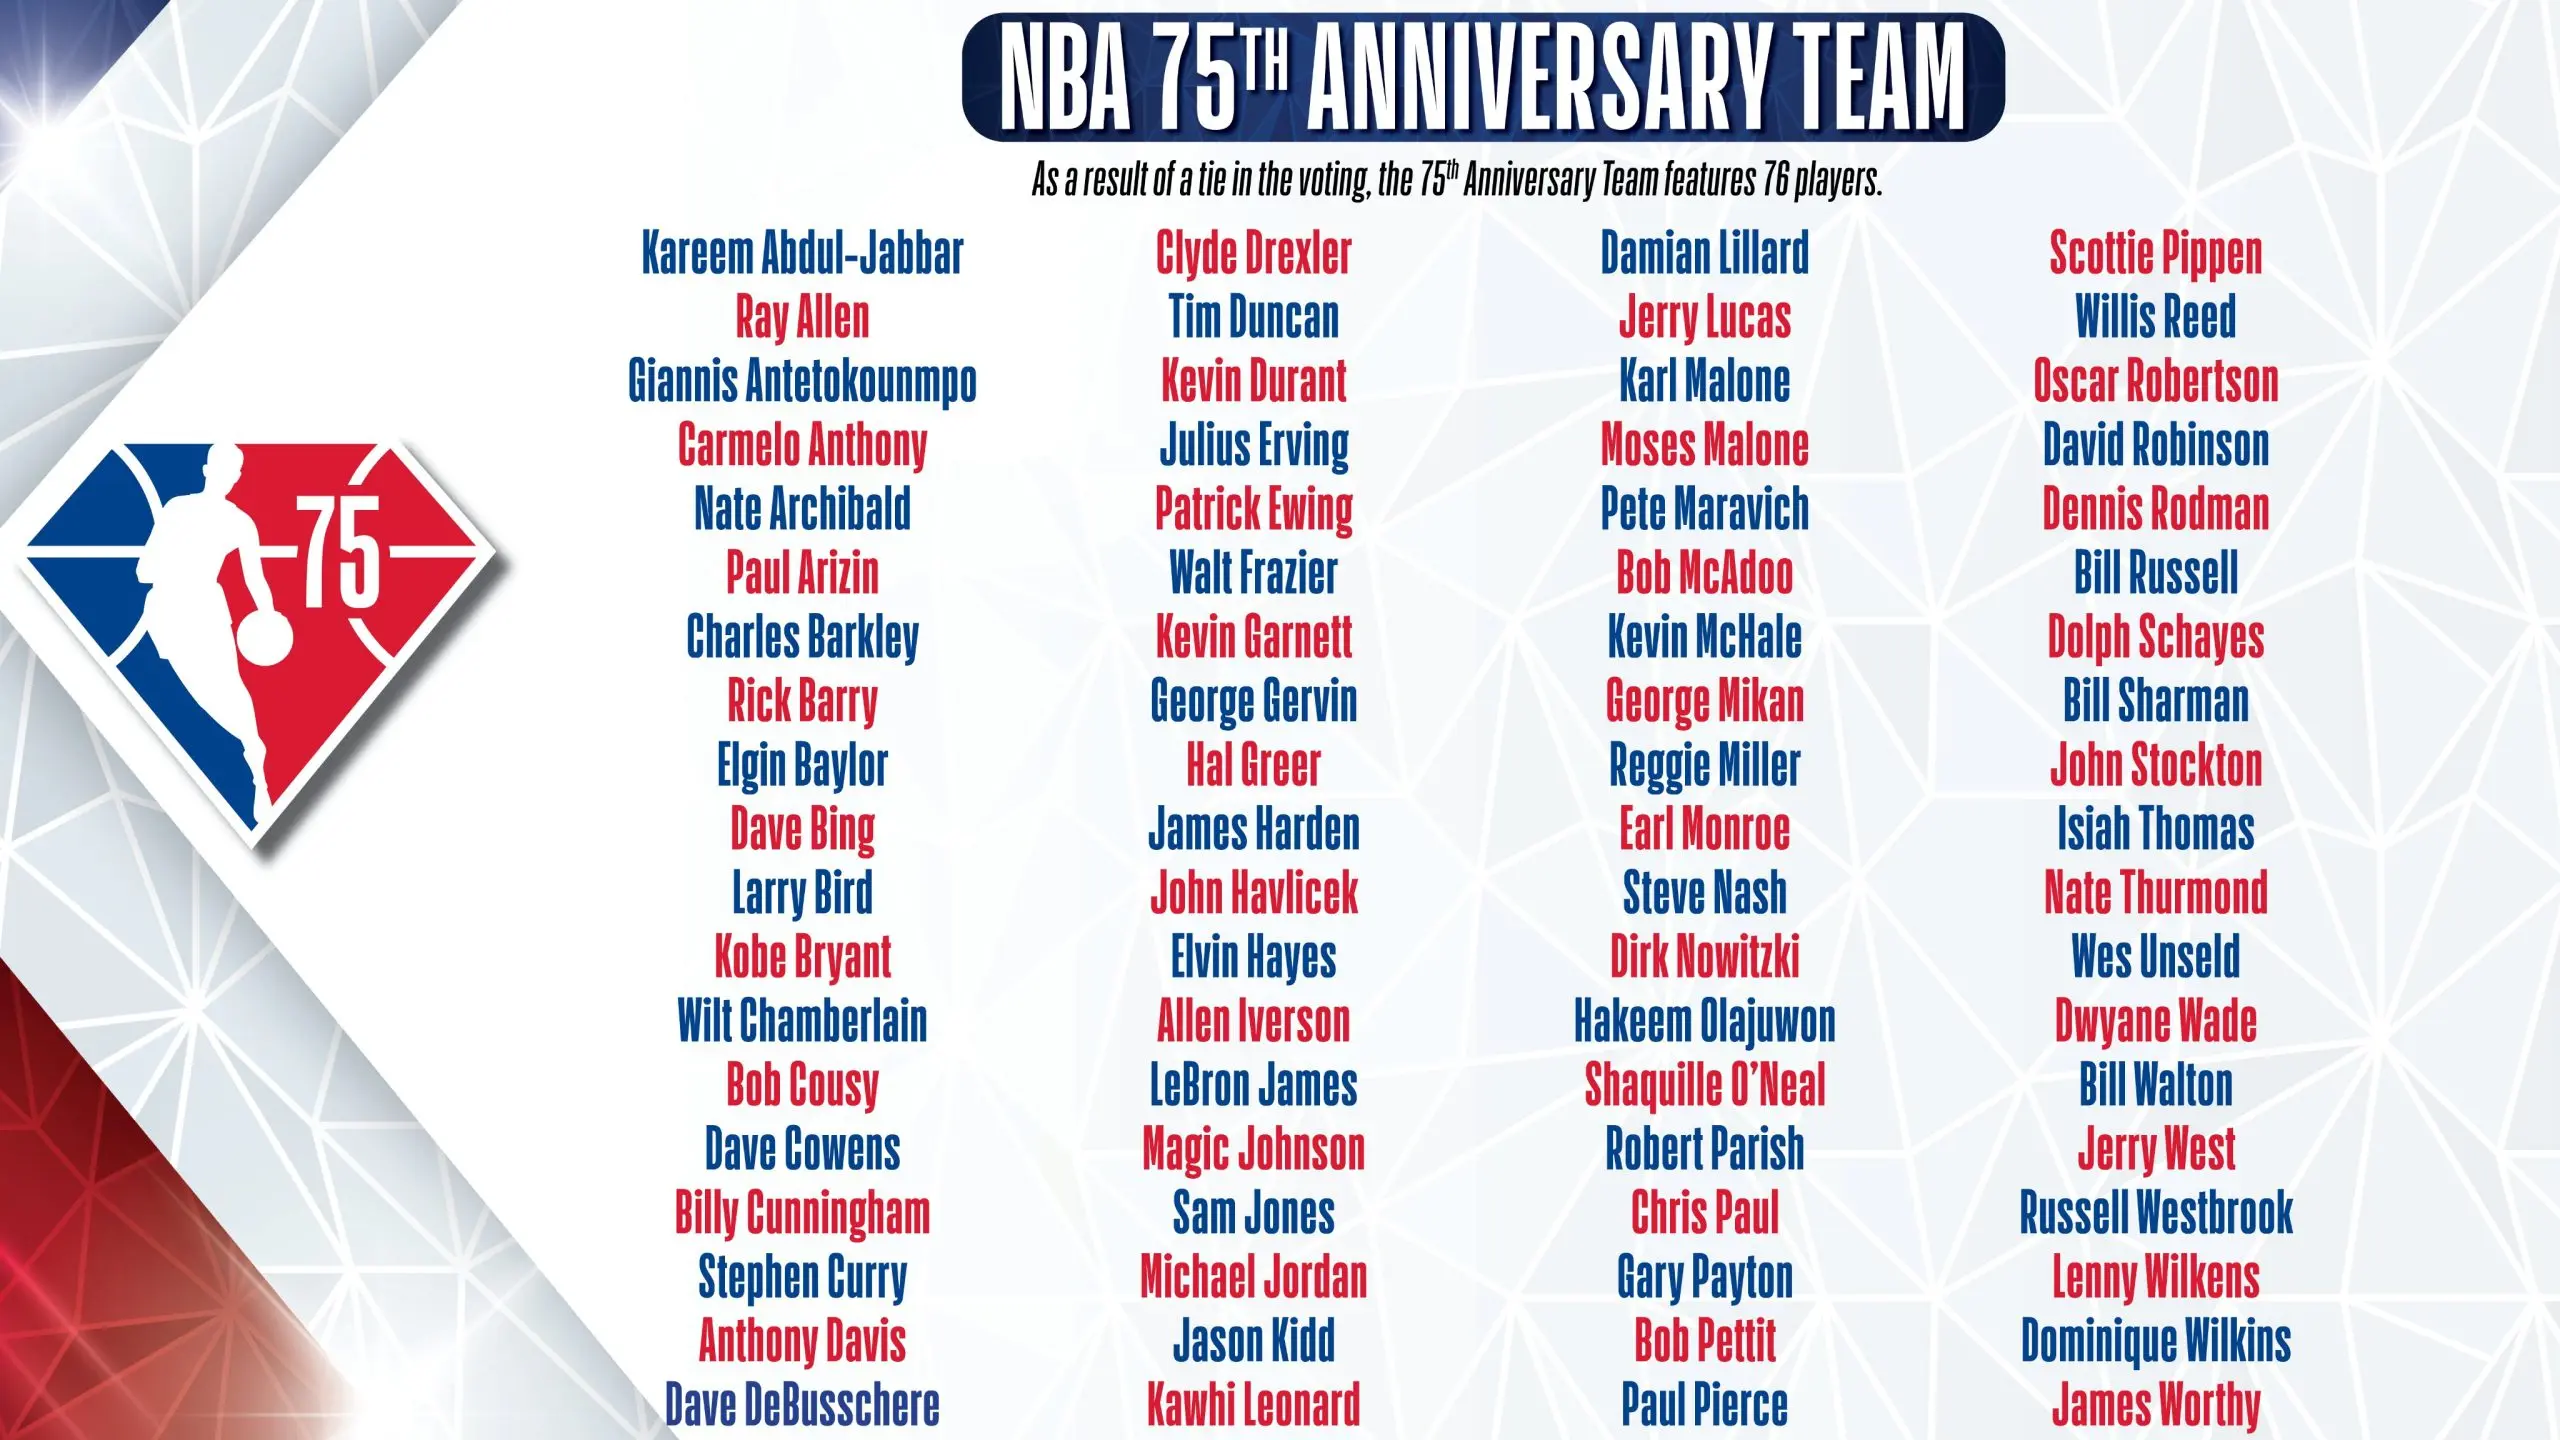 Os 10 maiores jogadores da história da NBA